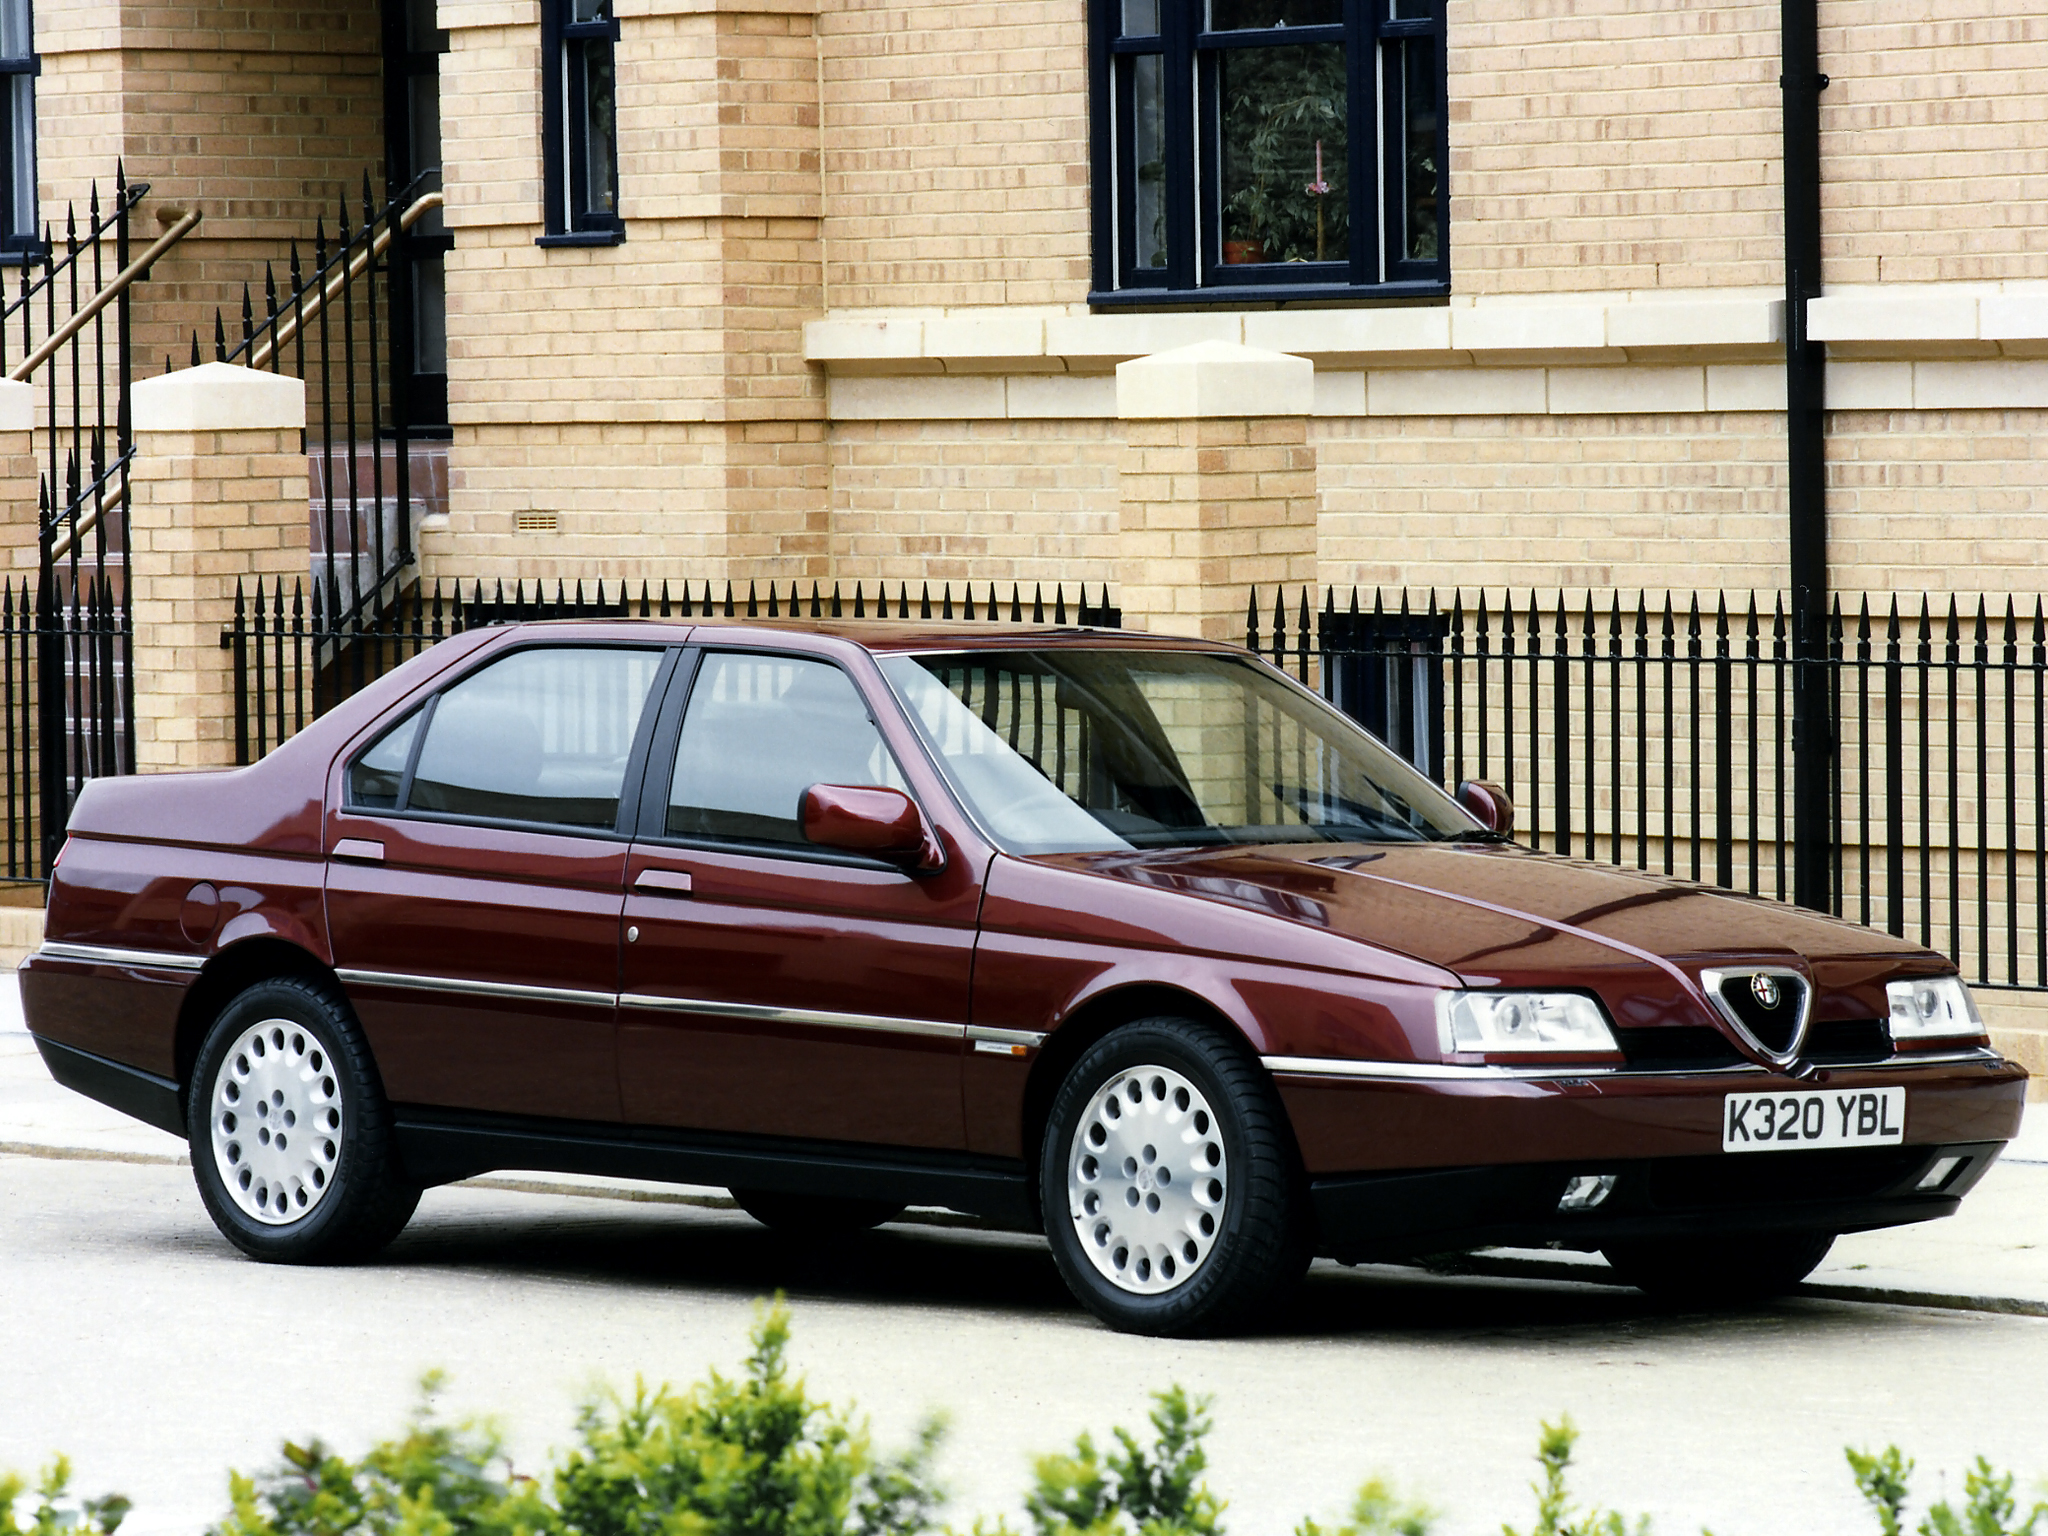 Alfa 164 Super kom 1993 i samband med en uppdatering av modellen och gav ett betydligt lyxigare intryck än tidigare.